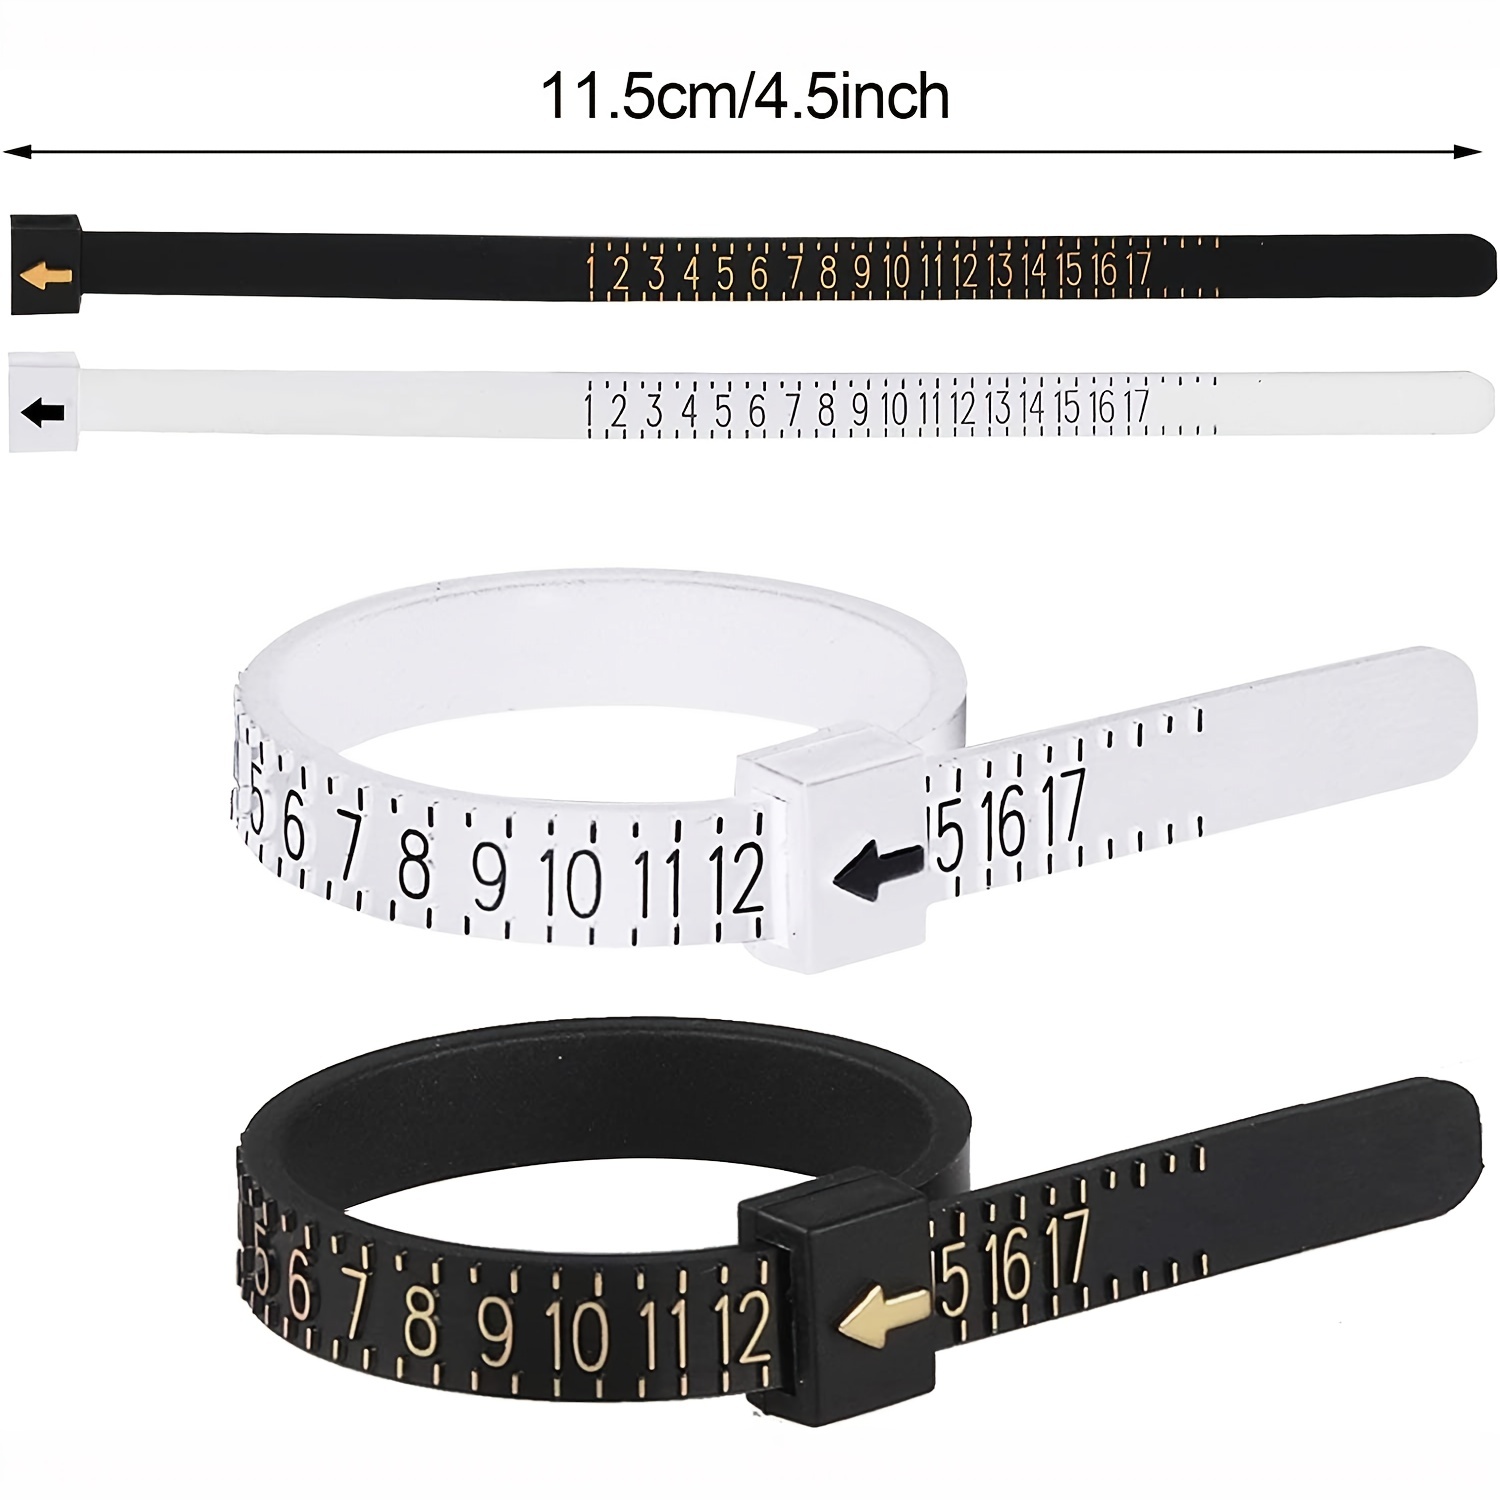  Ring Sizer Measuring Tool 11 PCs Ring Sizer Jewelry